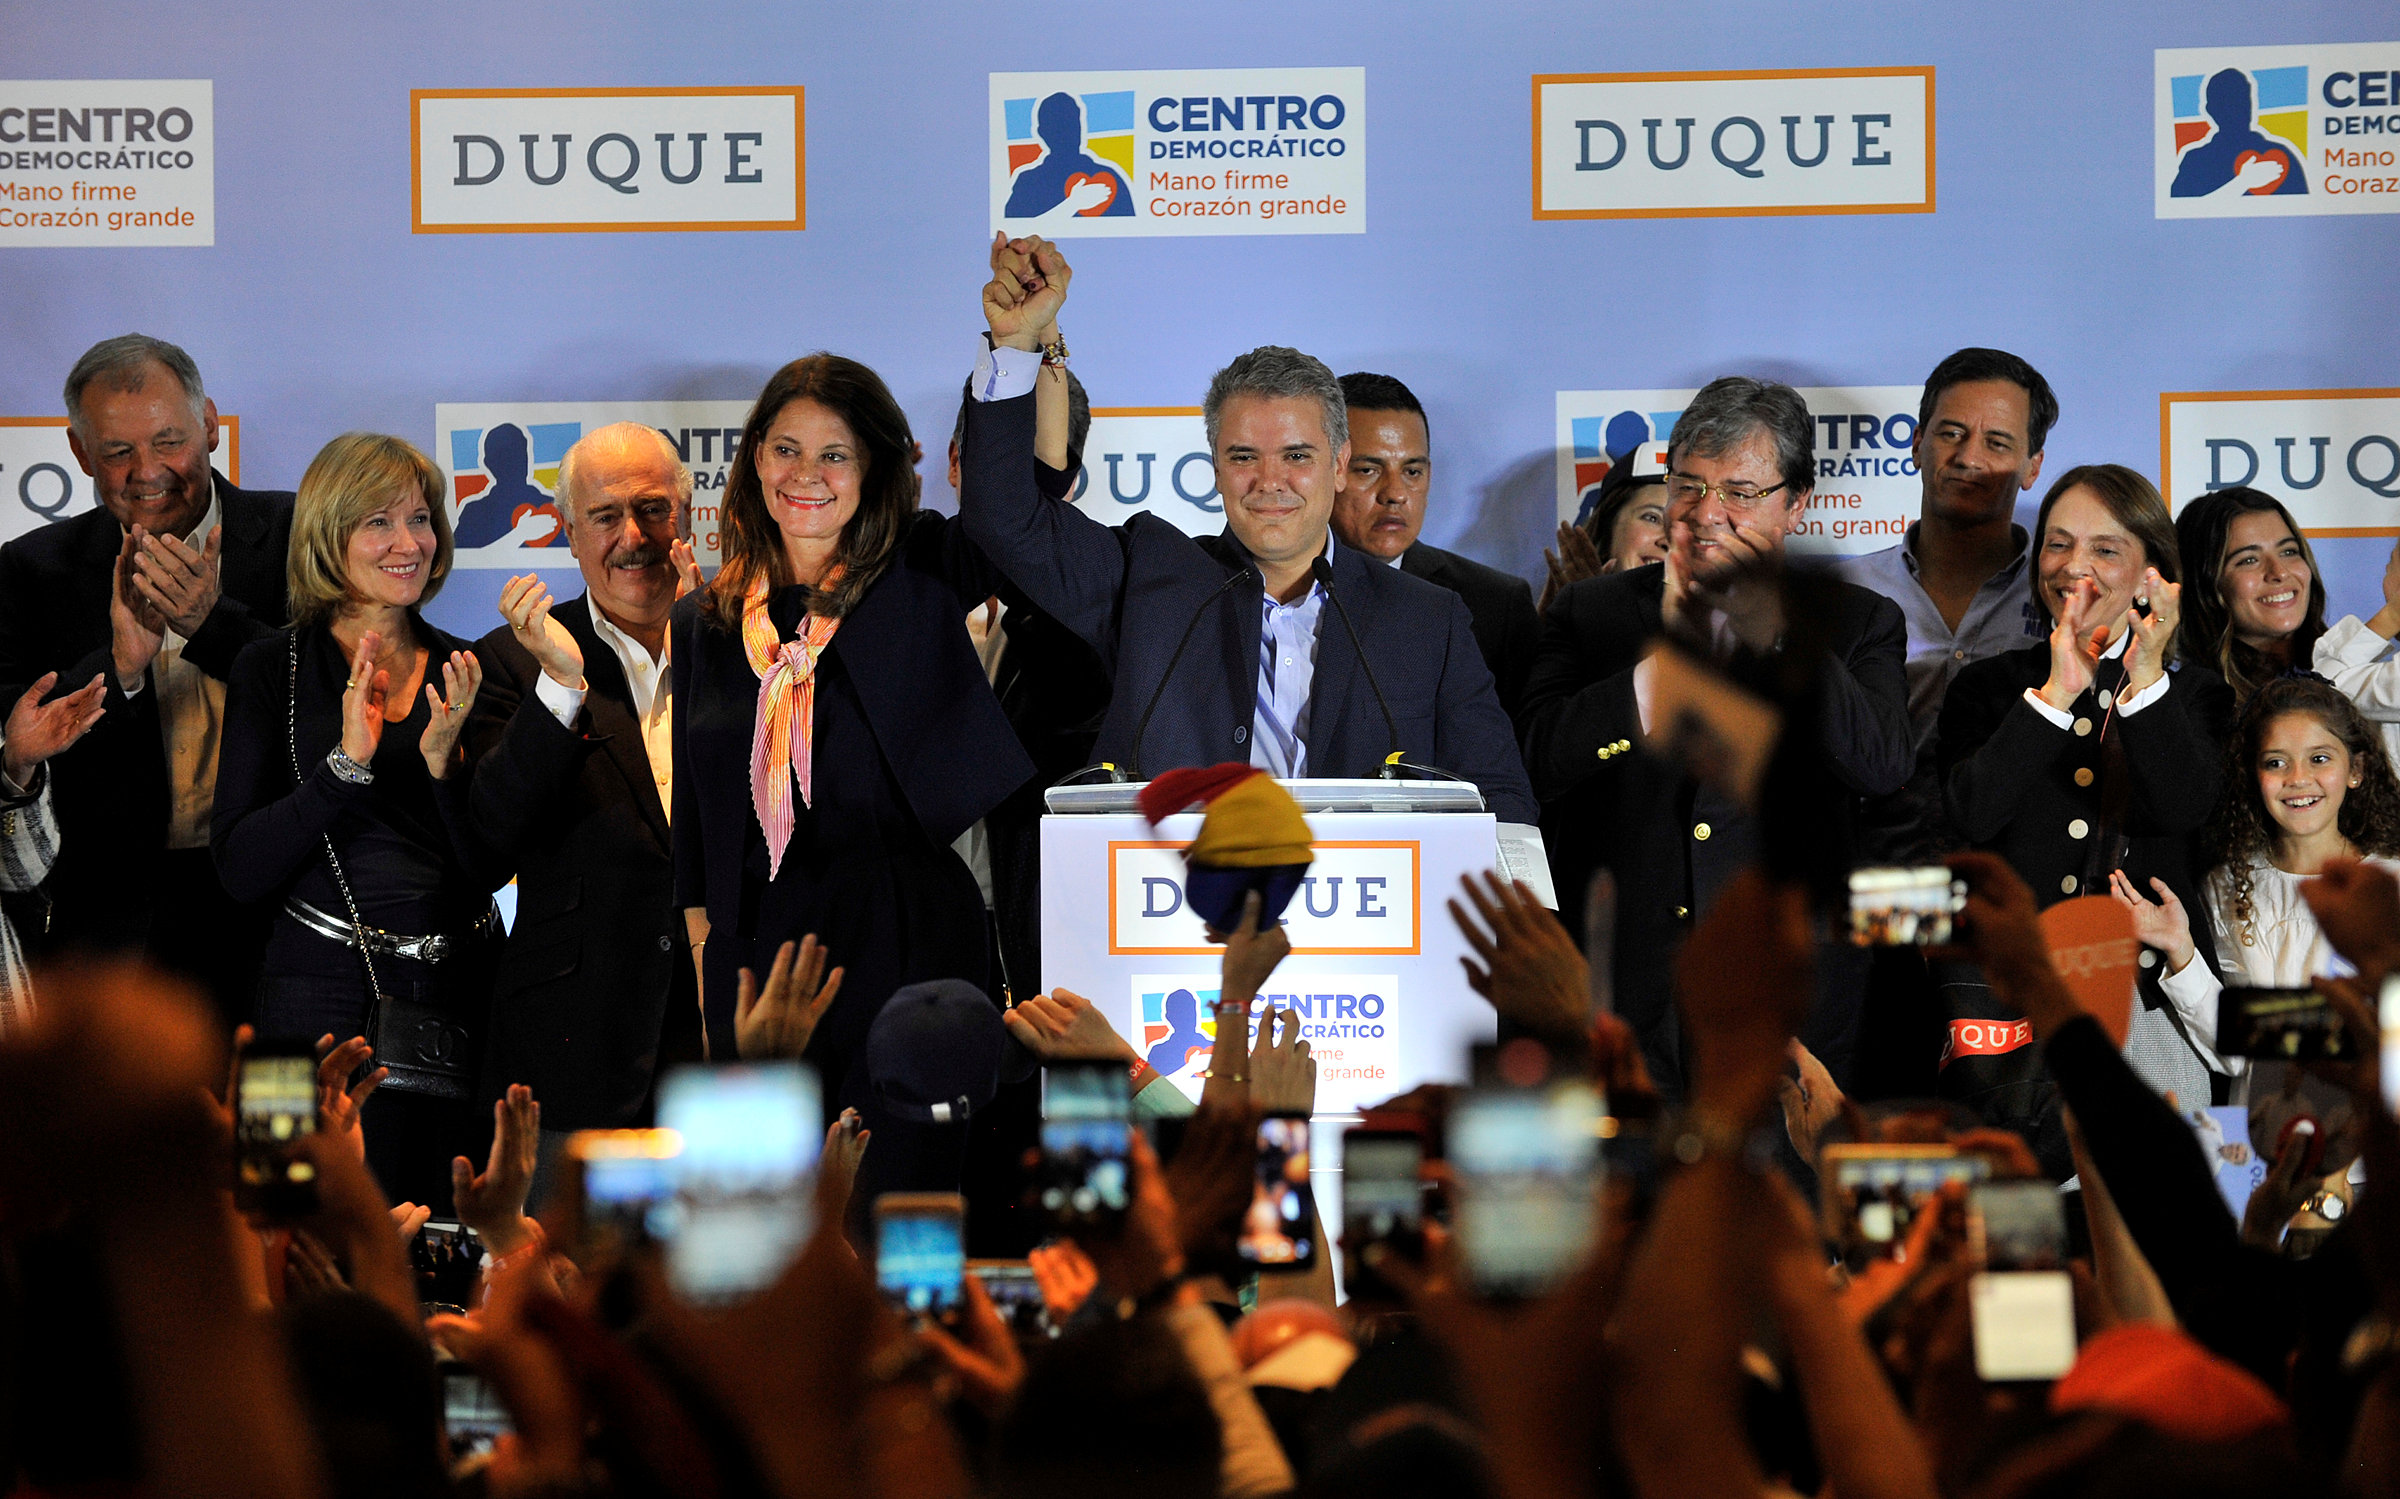 Iván Duque lidera intención de voto para presidenciales en Colombia, según encuesta